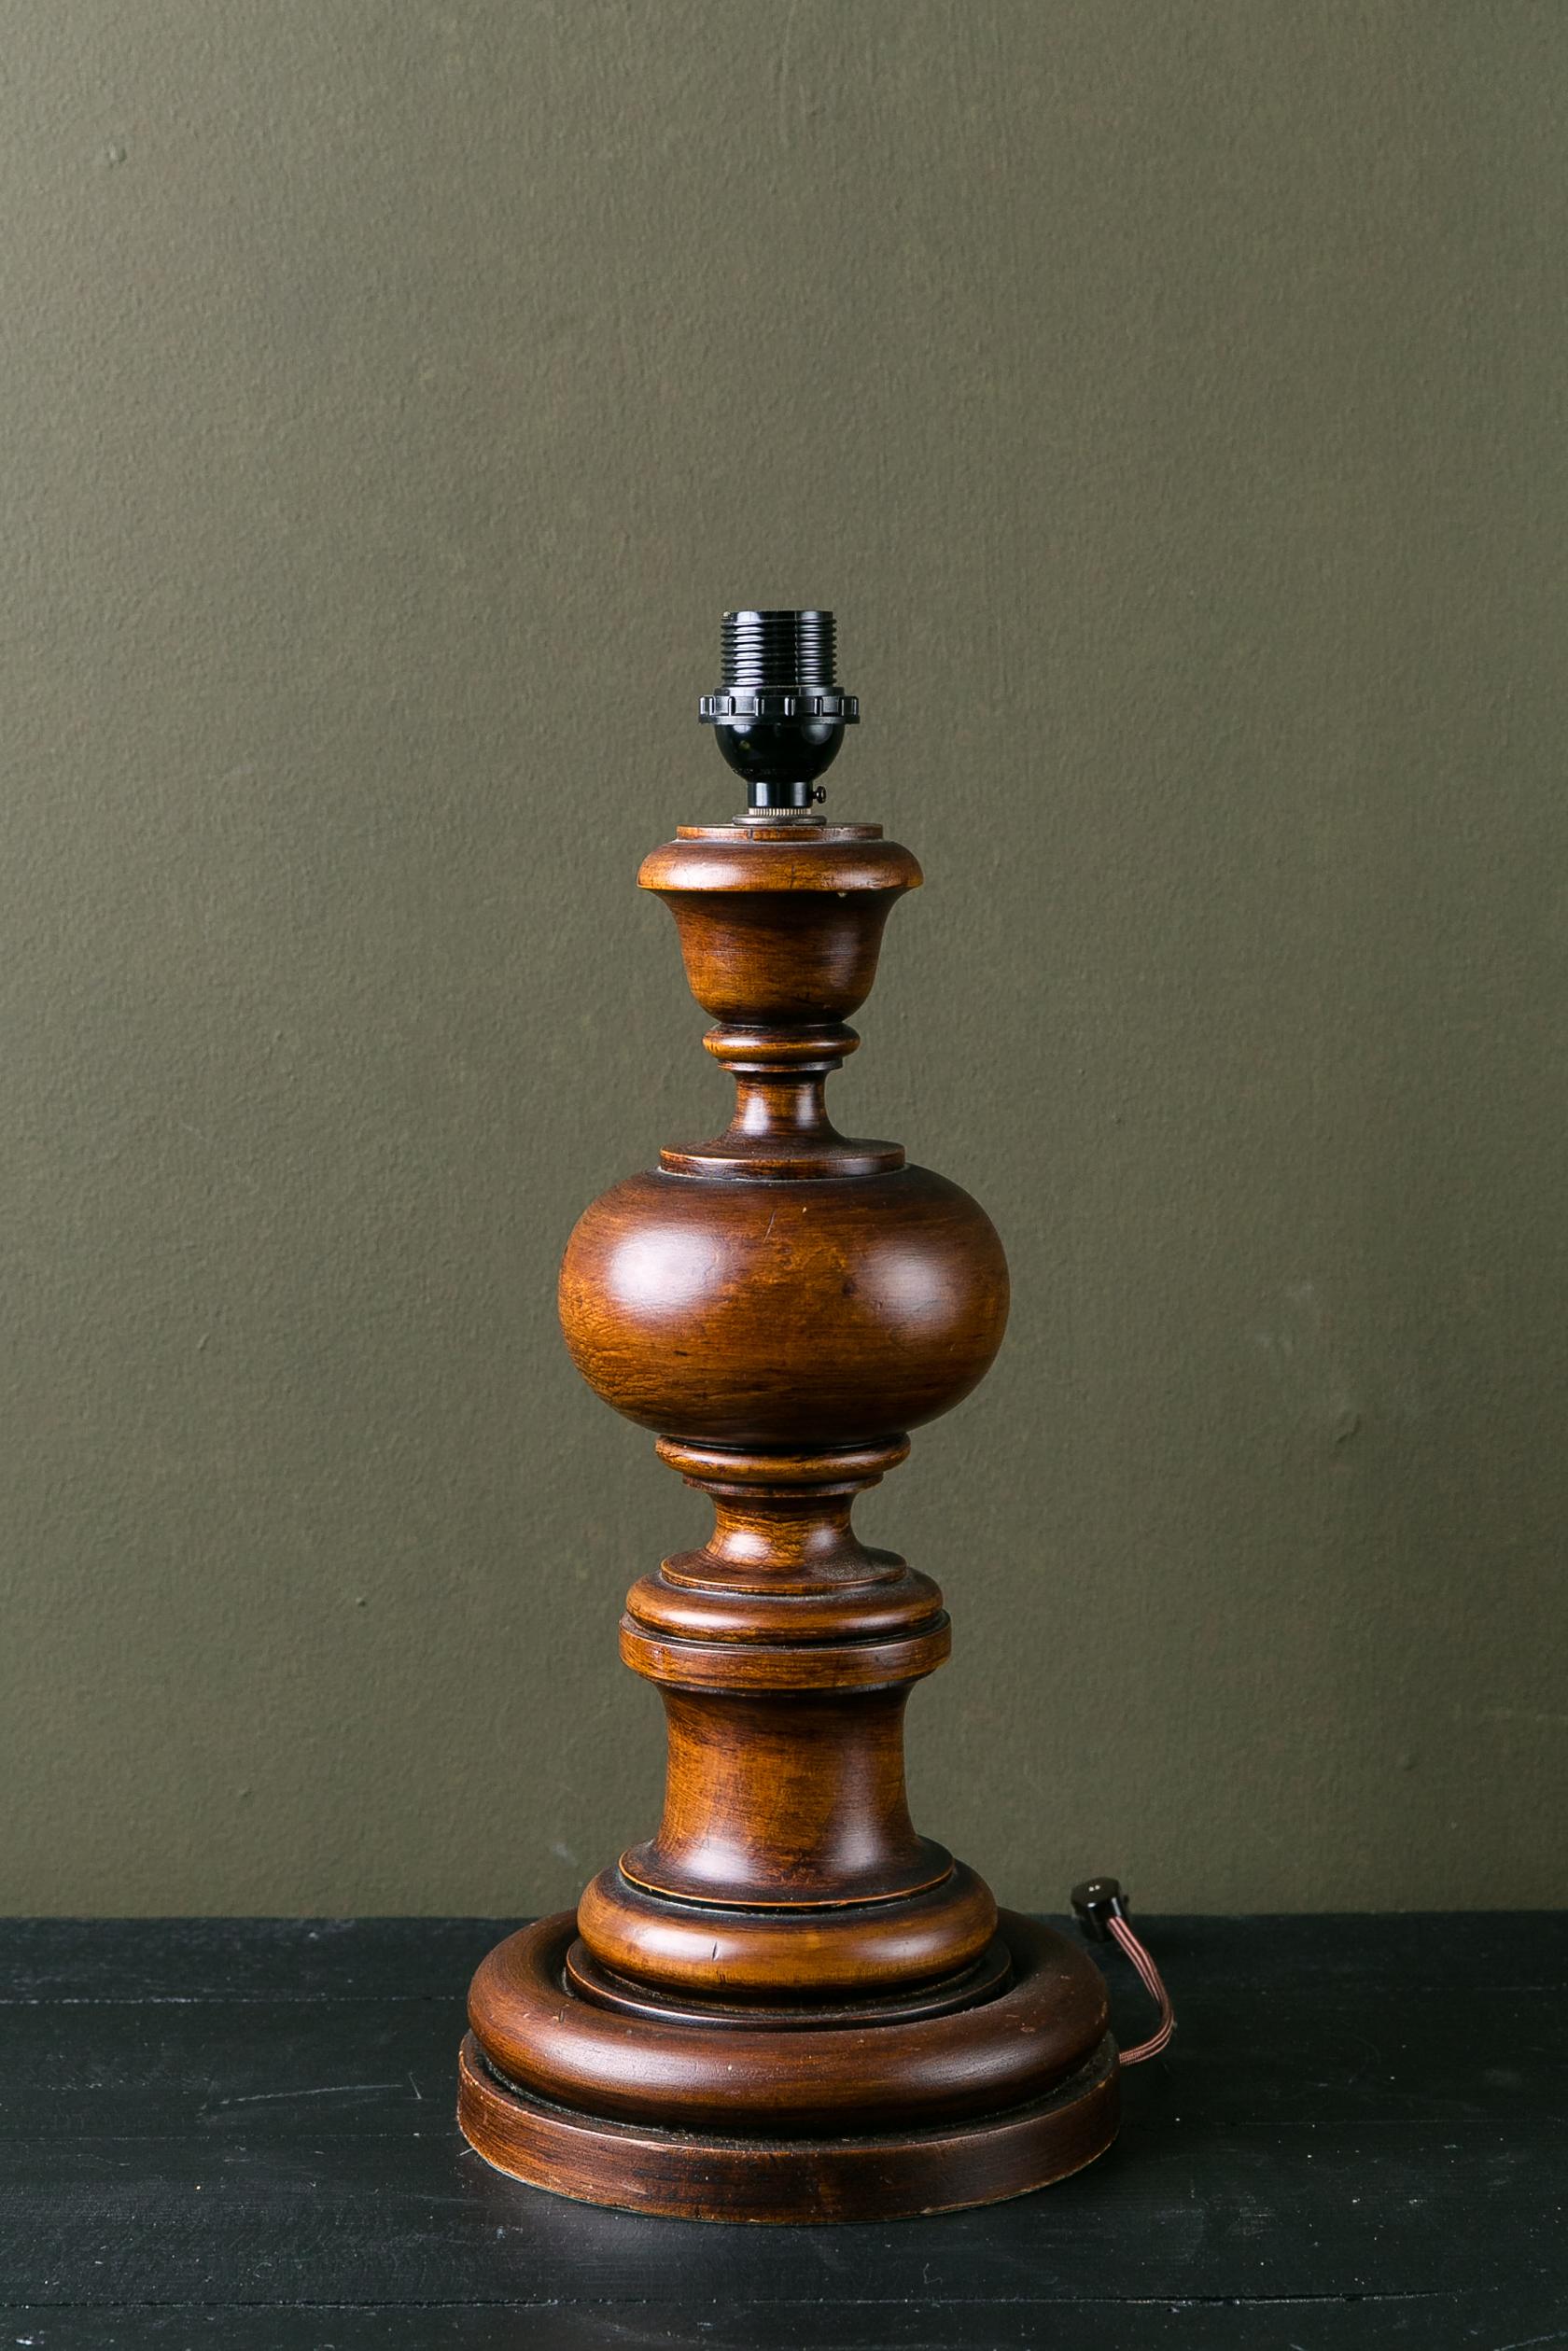 Cette lampe en bois sculpté a été fabriquée en Italie mais pourrait provenir de nombreux pays différents. Il a été câblé aux États-Unis à l'aide d'une prise phénolique. La lampe est un classique qui pourrait se trouver dans une maison de campagne ou